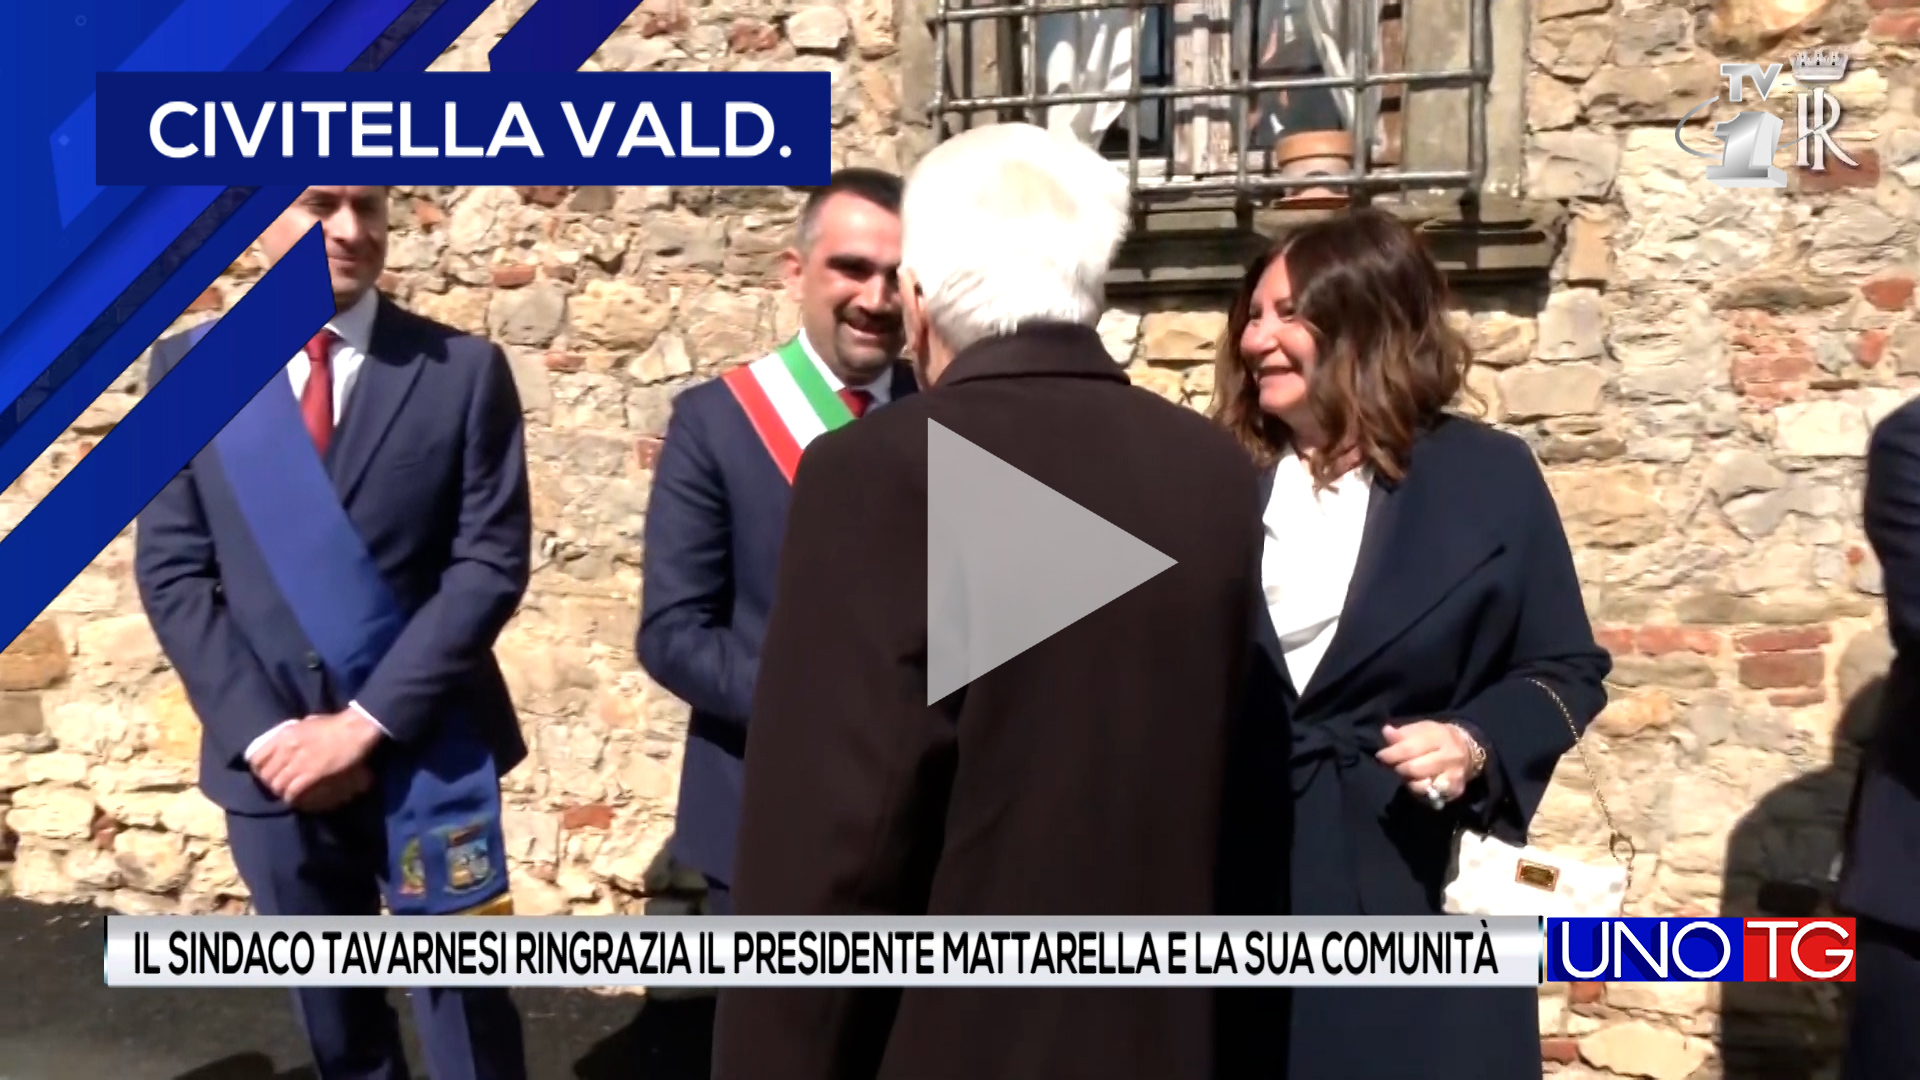 Il sindaco Tavarnesi ringrazia il presidente Mattarella e la sua comunità.